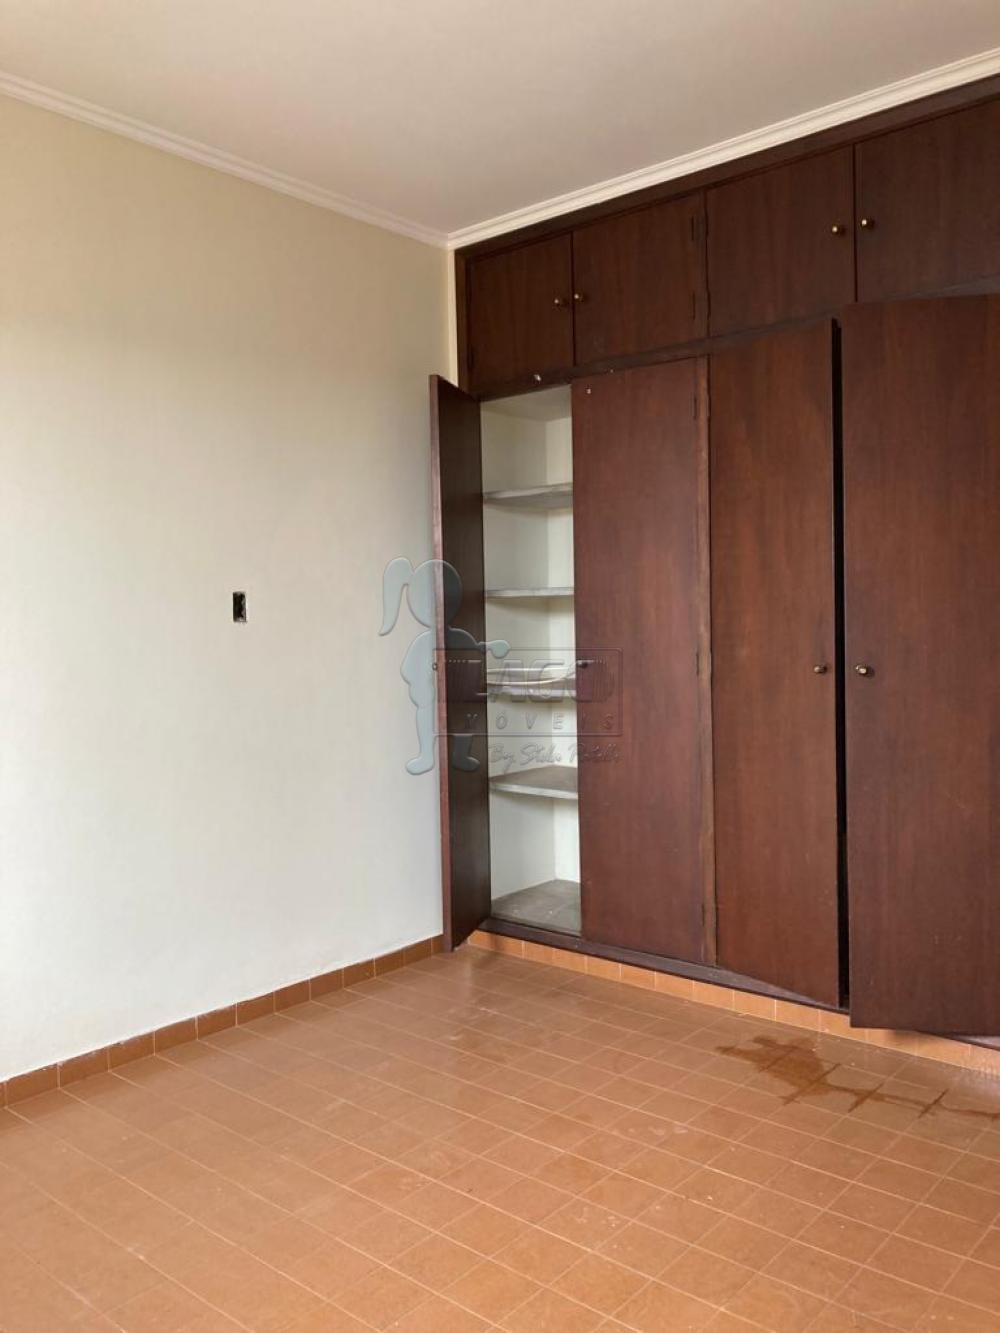 Alugar Casas / Padrão em Ribeirão Preto R$ 1.650,00 - Foto 8